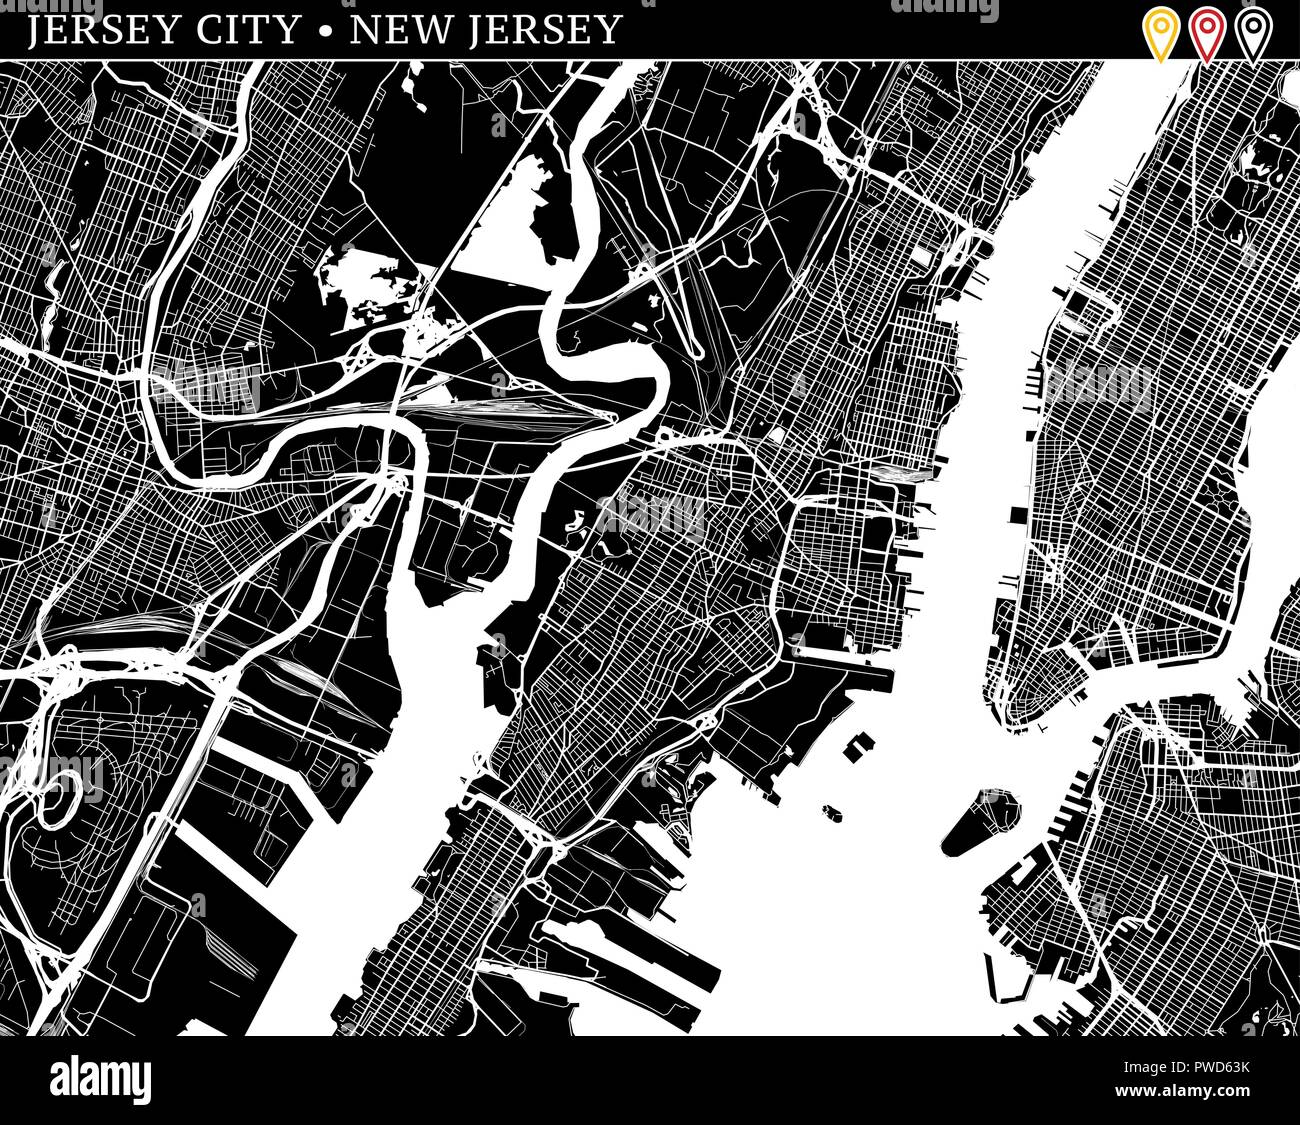 Einfache Karte von Jersey City, New Jersey, USA. Schwarze und weiße Version für saubere Hintergründe und druckt. Diese Karte von Jersey City enthält drei Marker w Stock Vektor